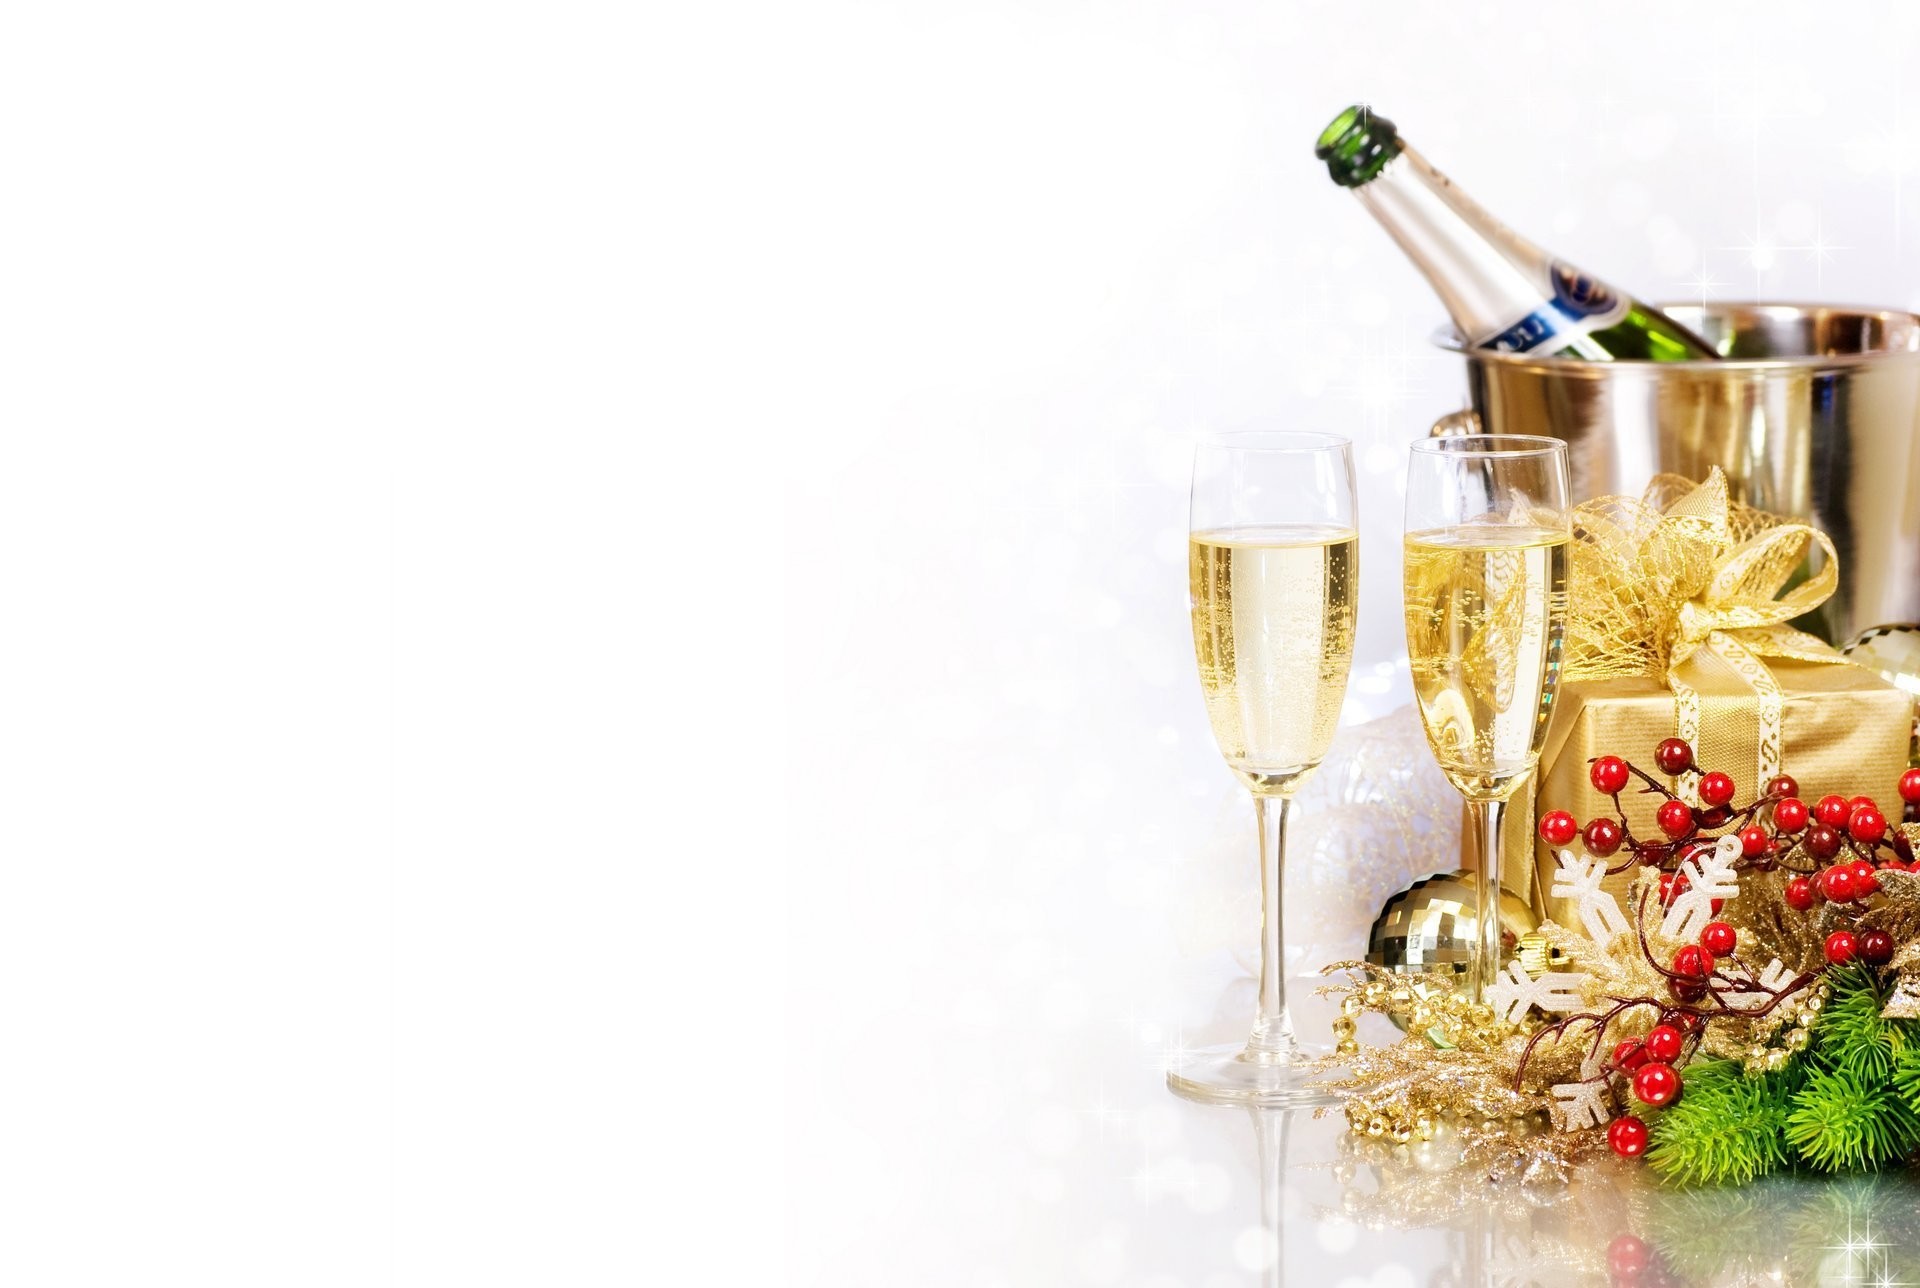 Hình nền chúc mừng năm mới với hình ảnh ly rượu đẹp nhất